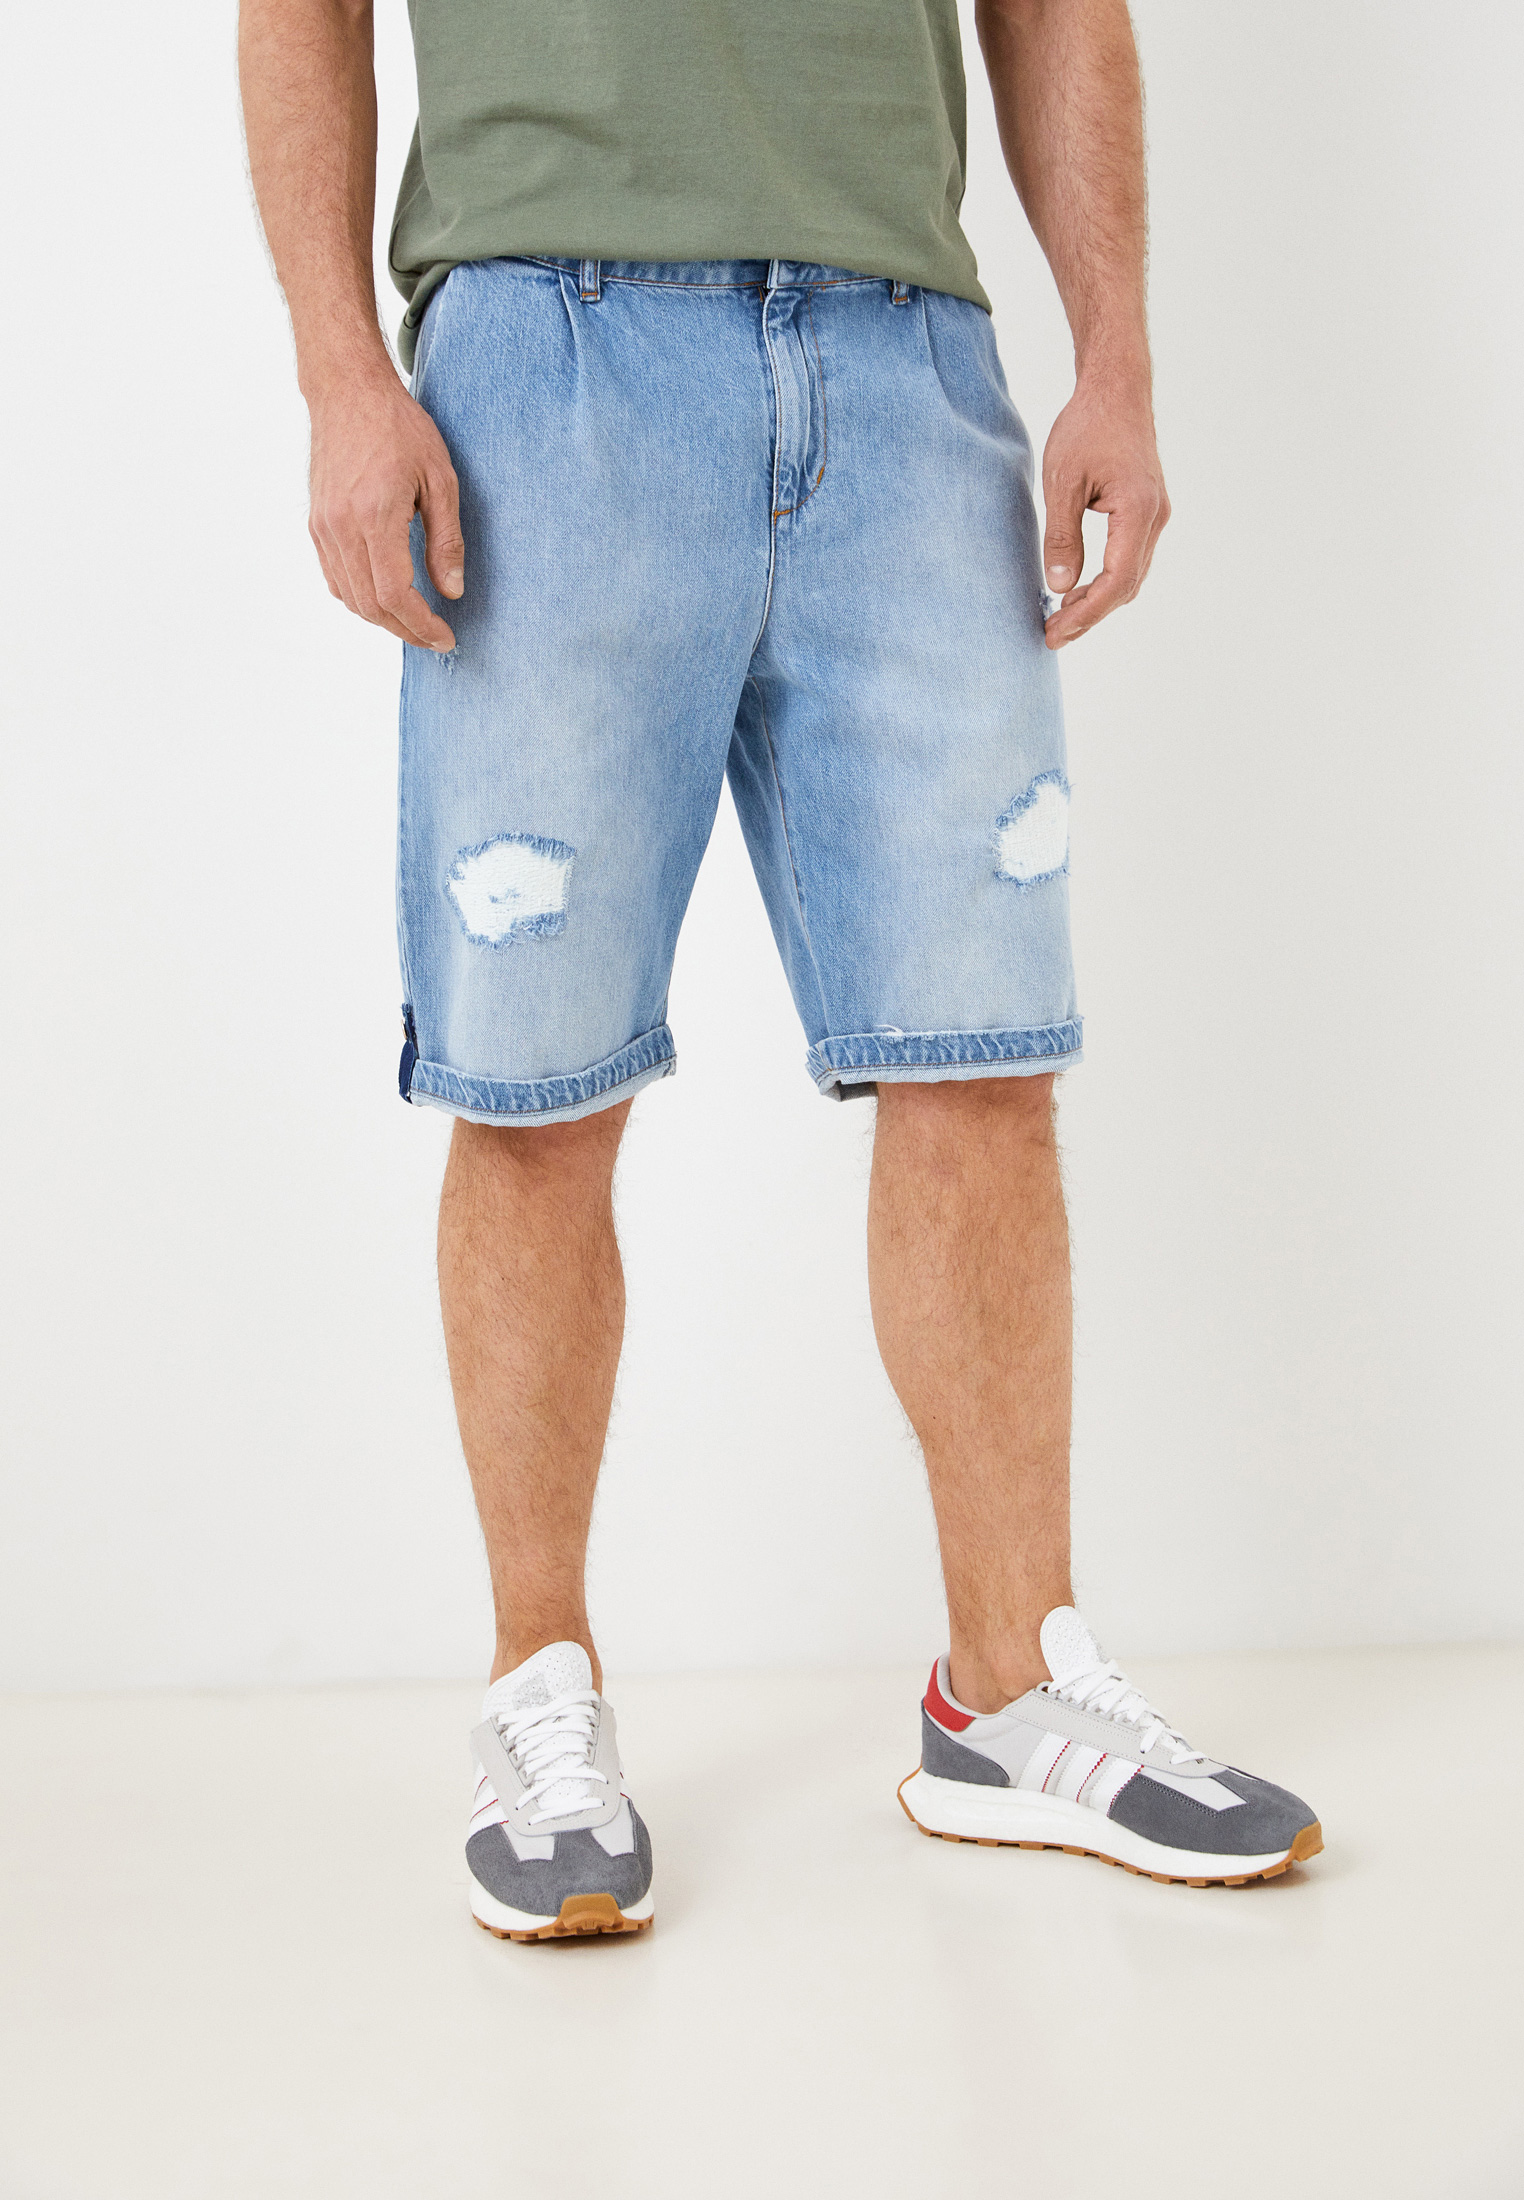 Мужские джинсовые шорты Berna M 22017330